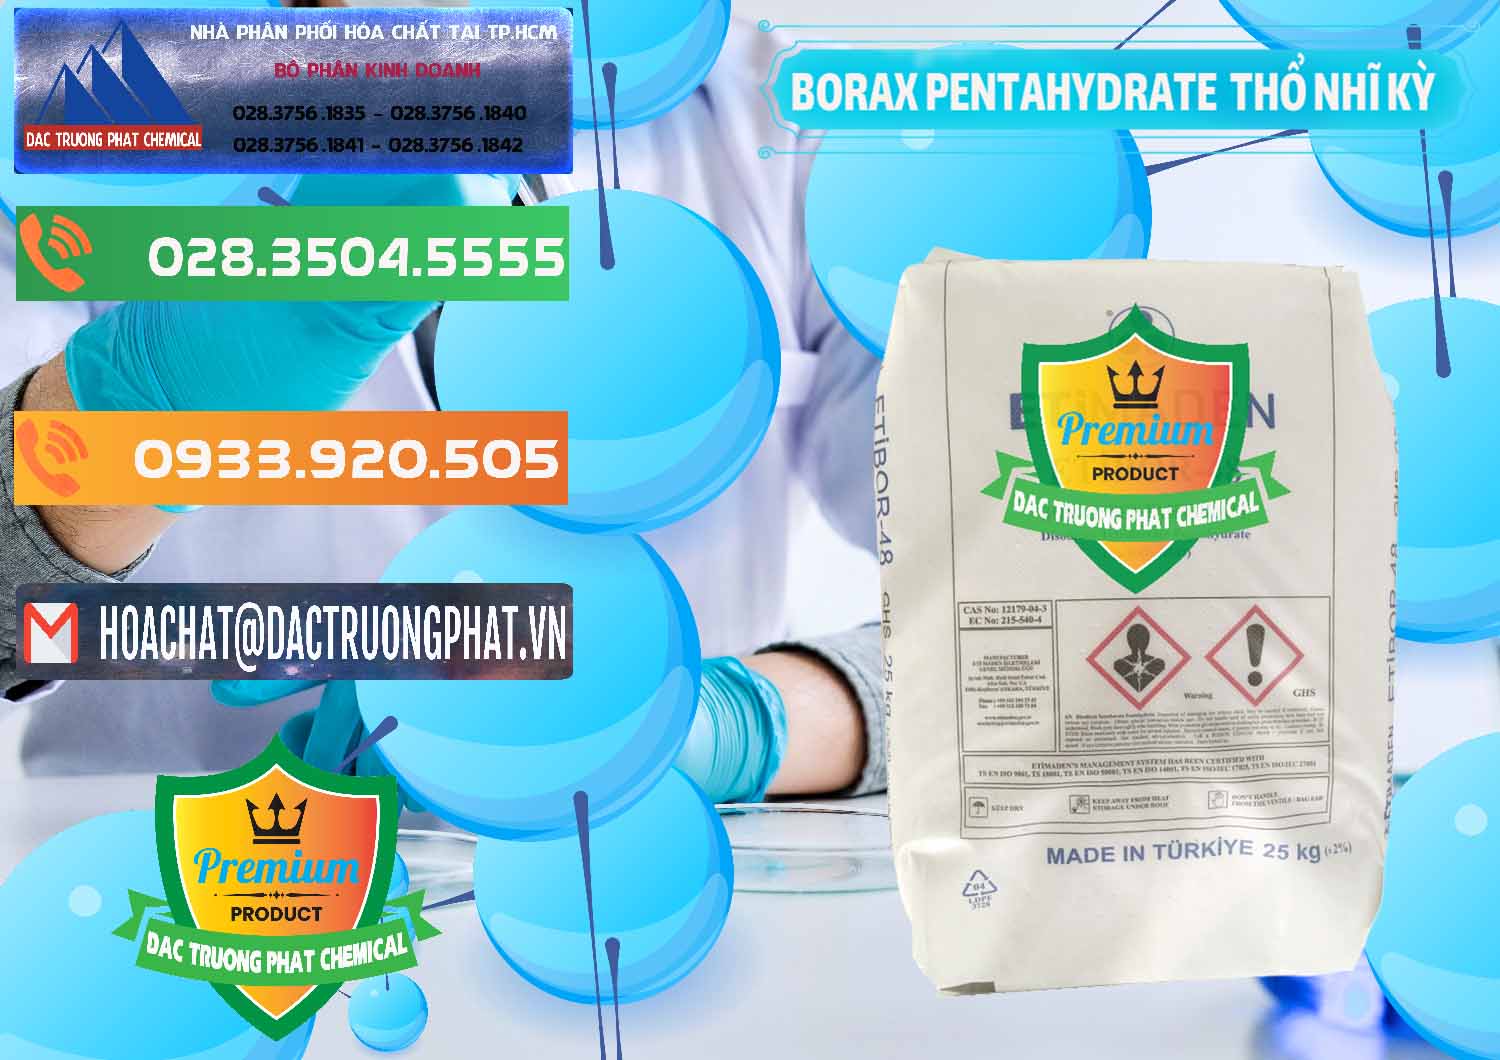 Kinh doanh ( bán ) Borax Pentahydrate Thổ Nhĩ Kỳ Turkey - 0431 - Cty cung cấp & kinh doanh hóa chất tại TP.HCM - hoachatxulynuoc.com.vn